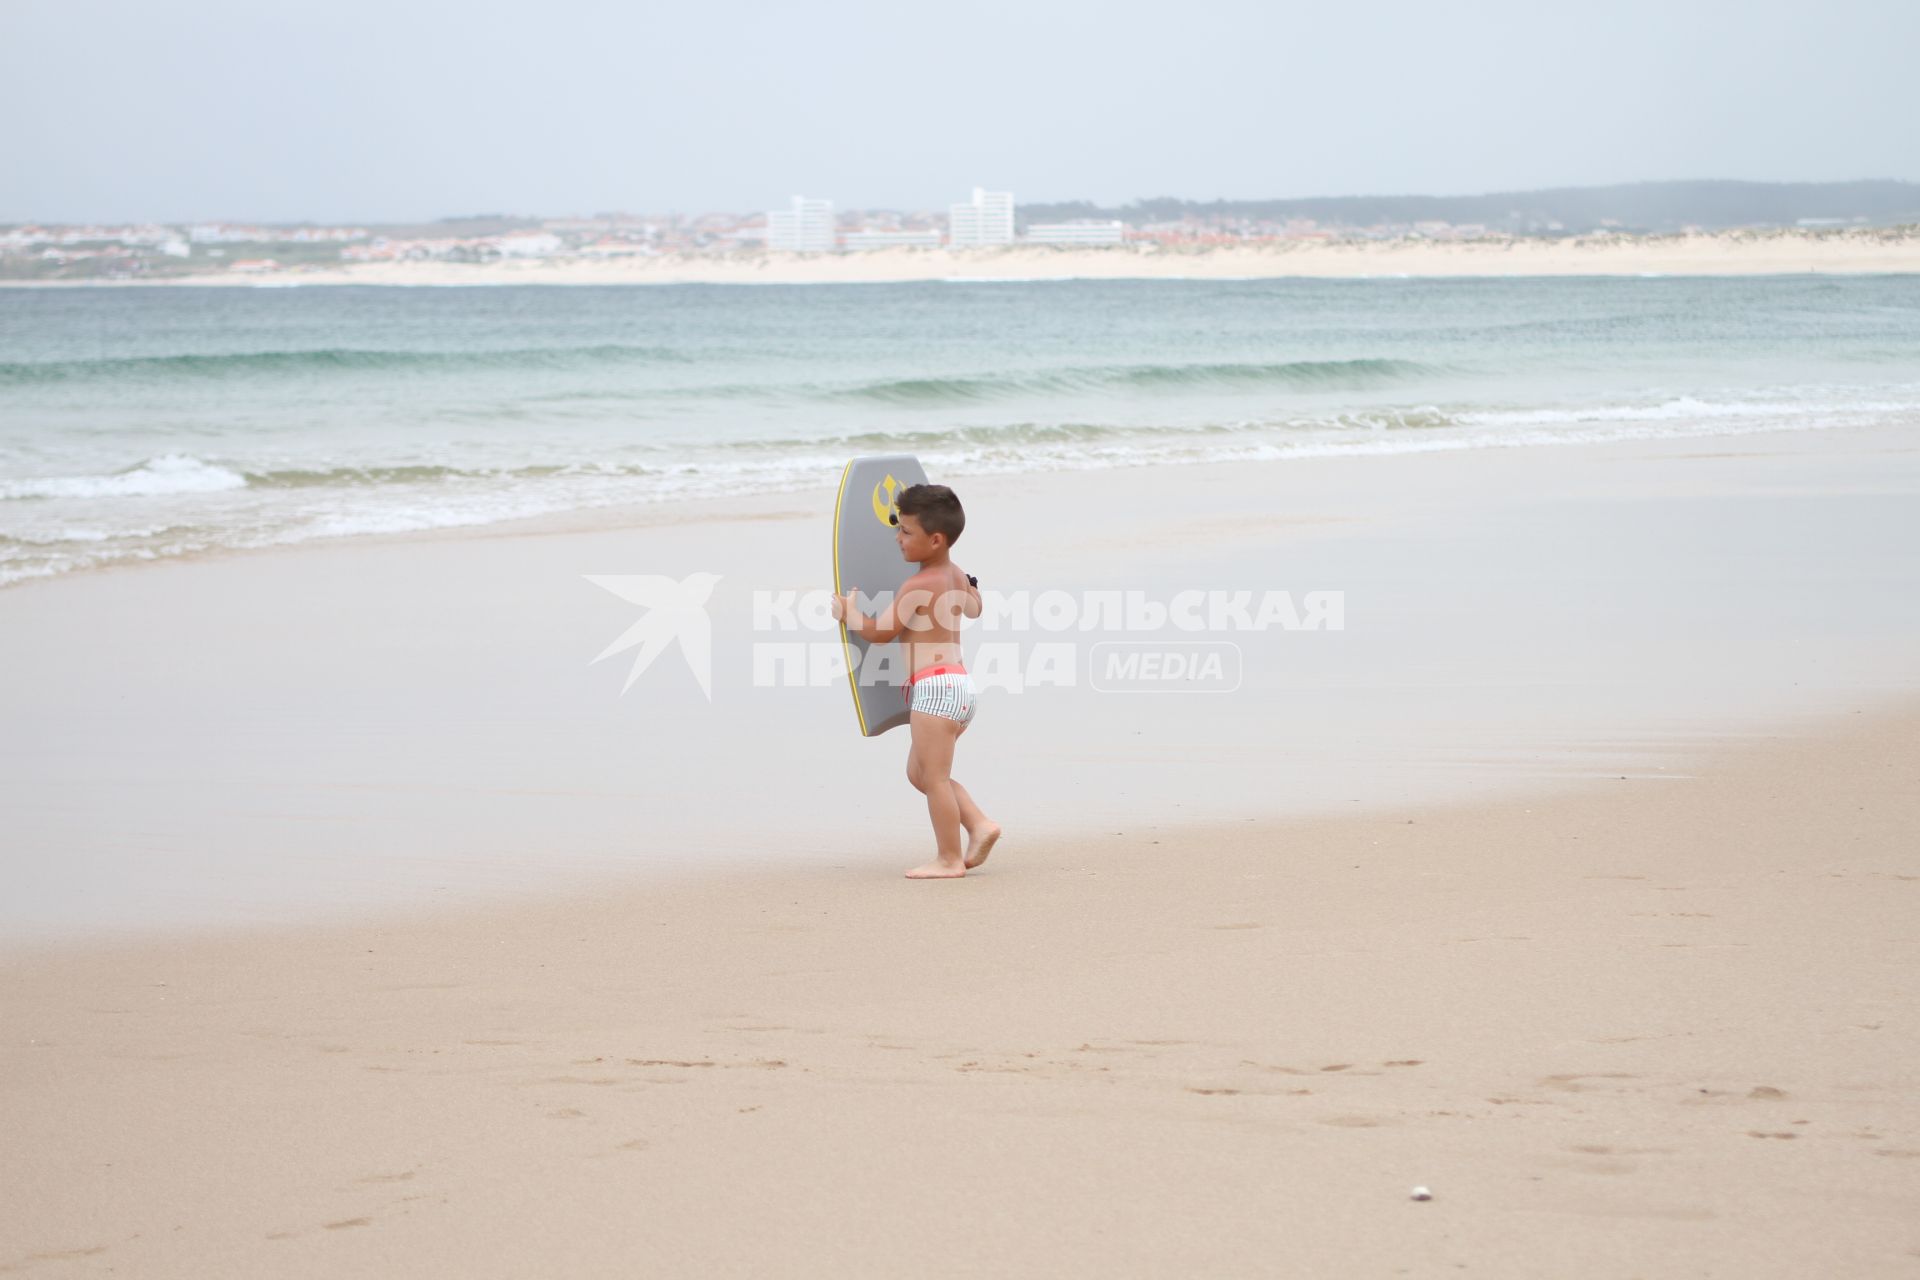 Португалия.  Пениши. Мальчик на пляже Атлантического океана.